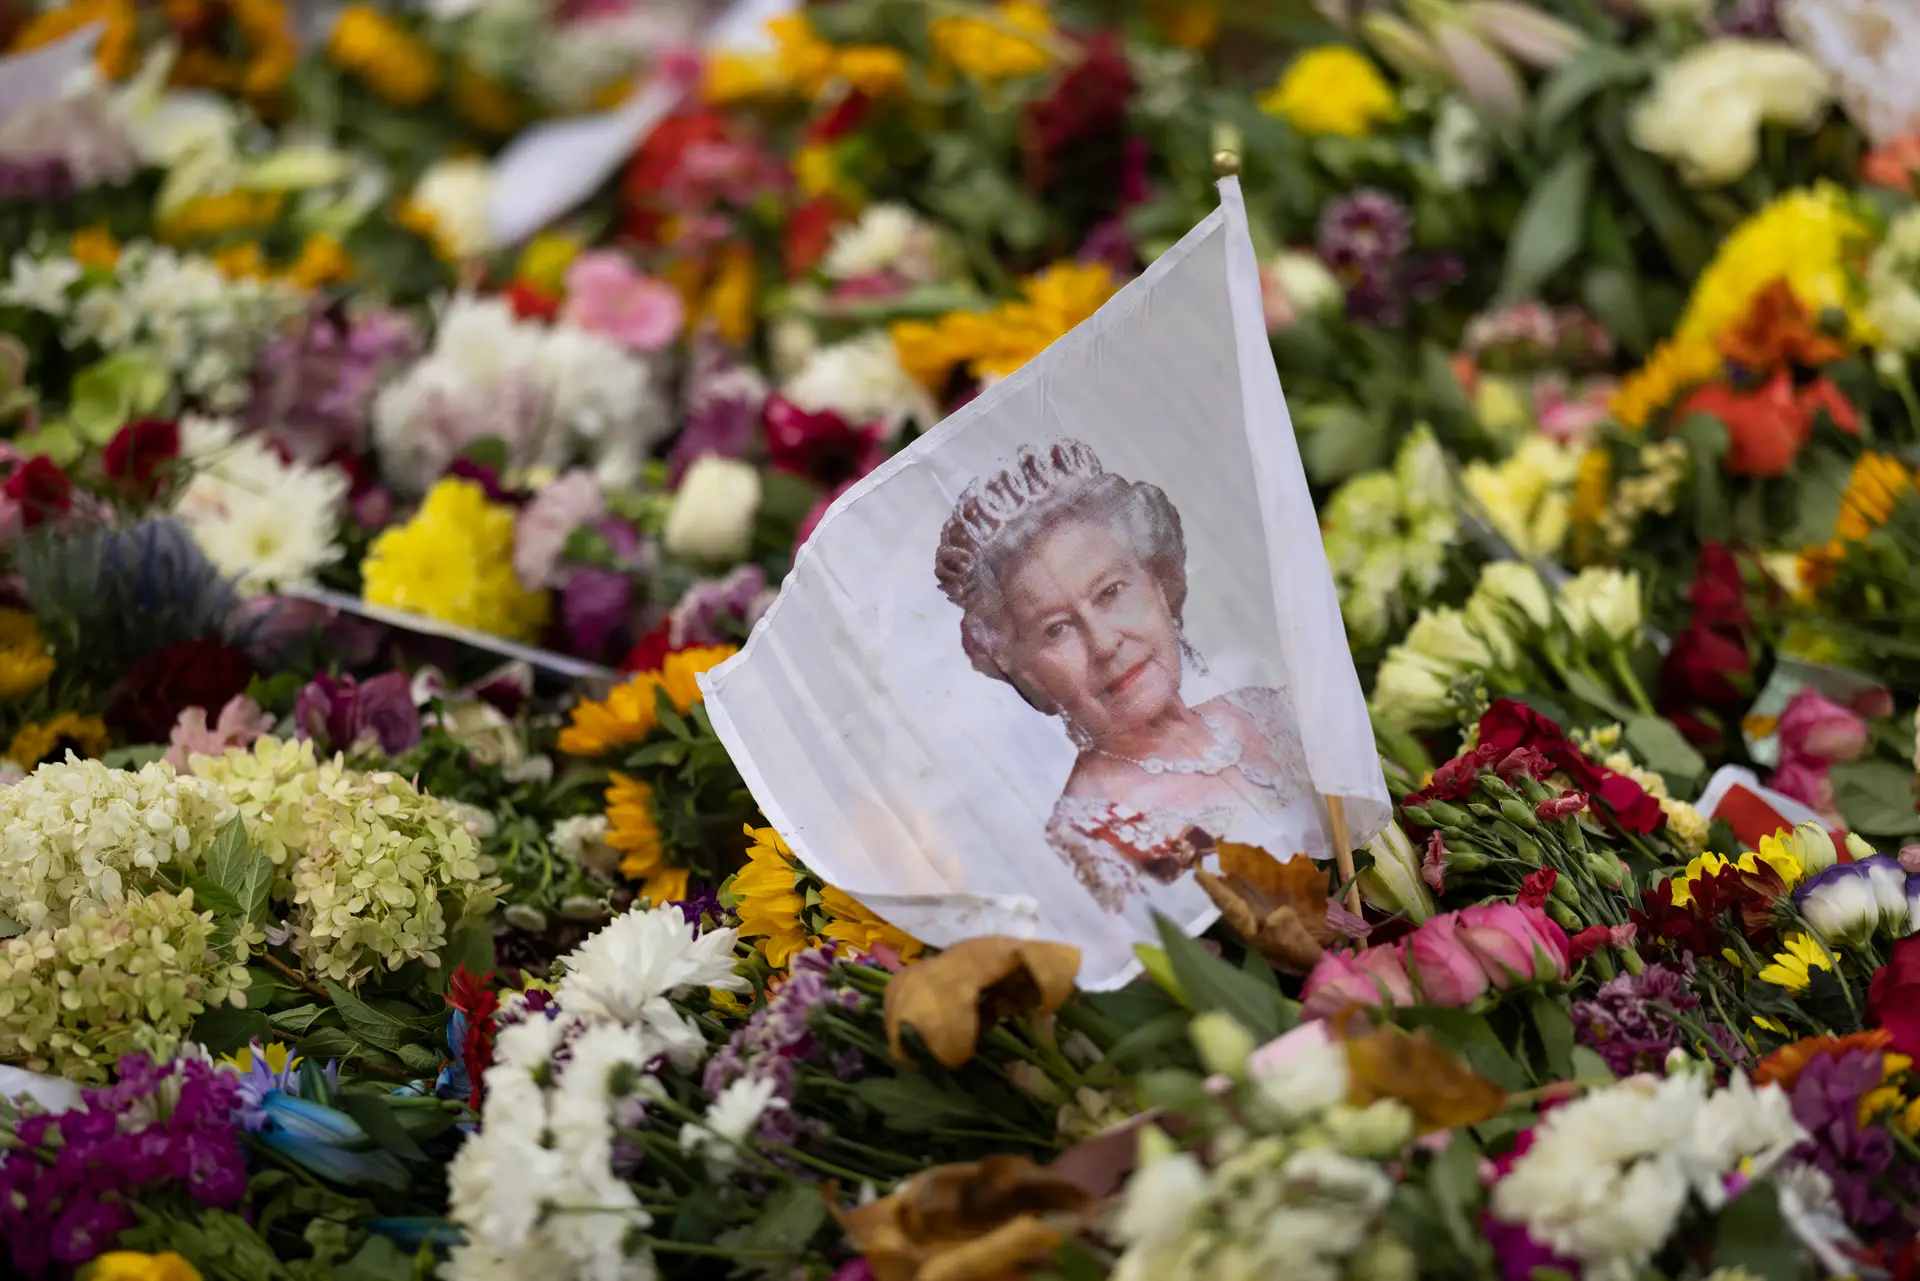 Portugueses no Reino Unido "mais preocupados com custo de vida" do que com morte da Rainha